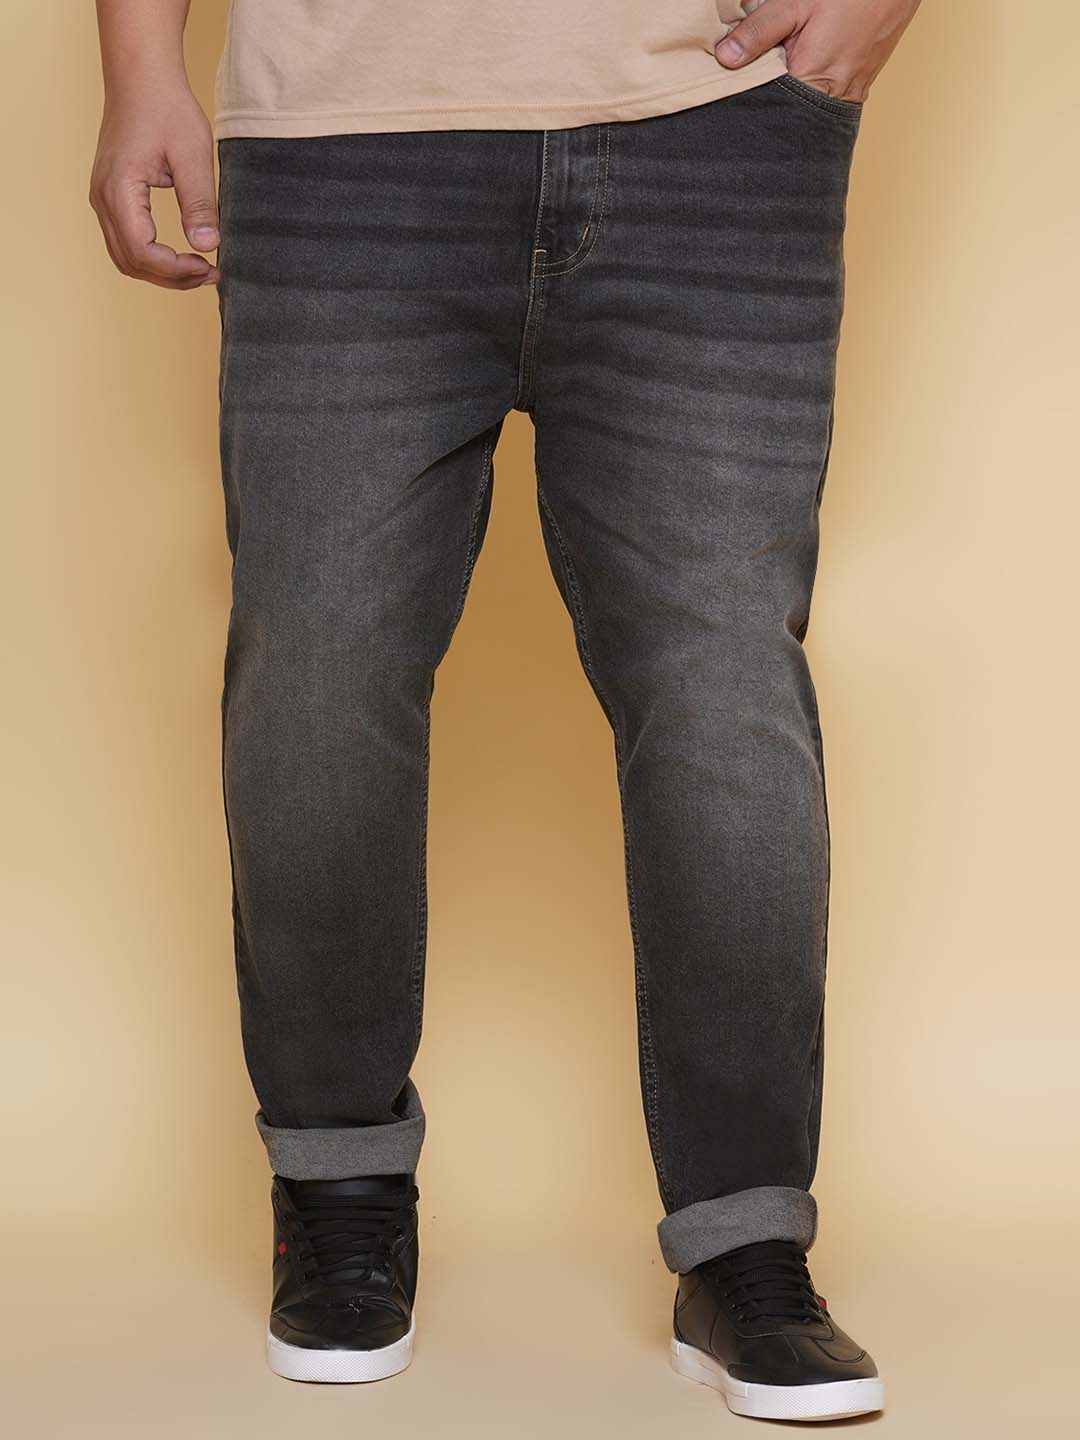 bottomwear/jeans/EJPJ25135/ejpj25135-1.jpg